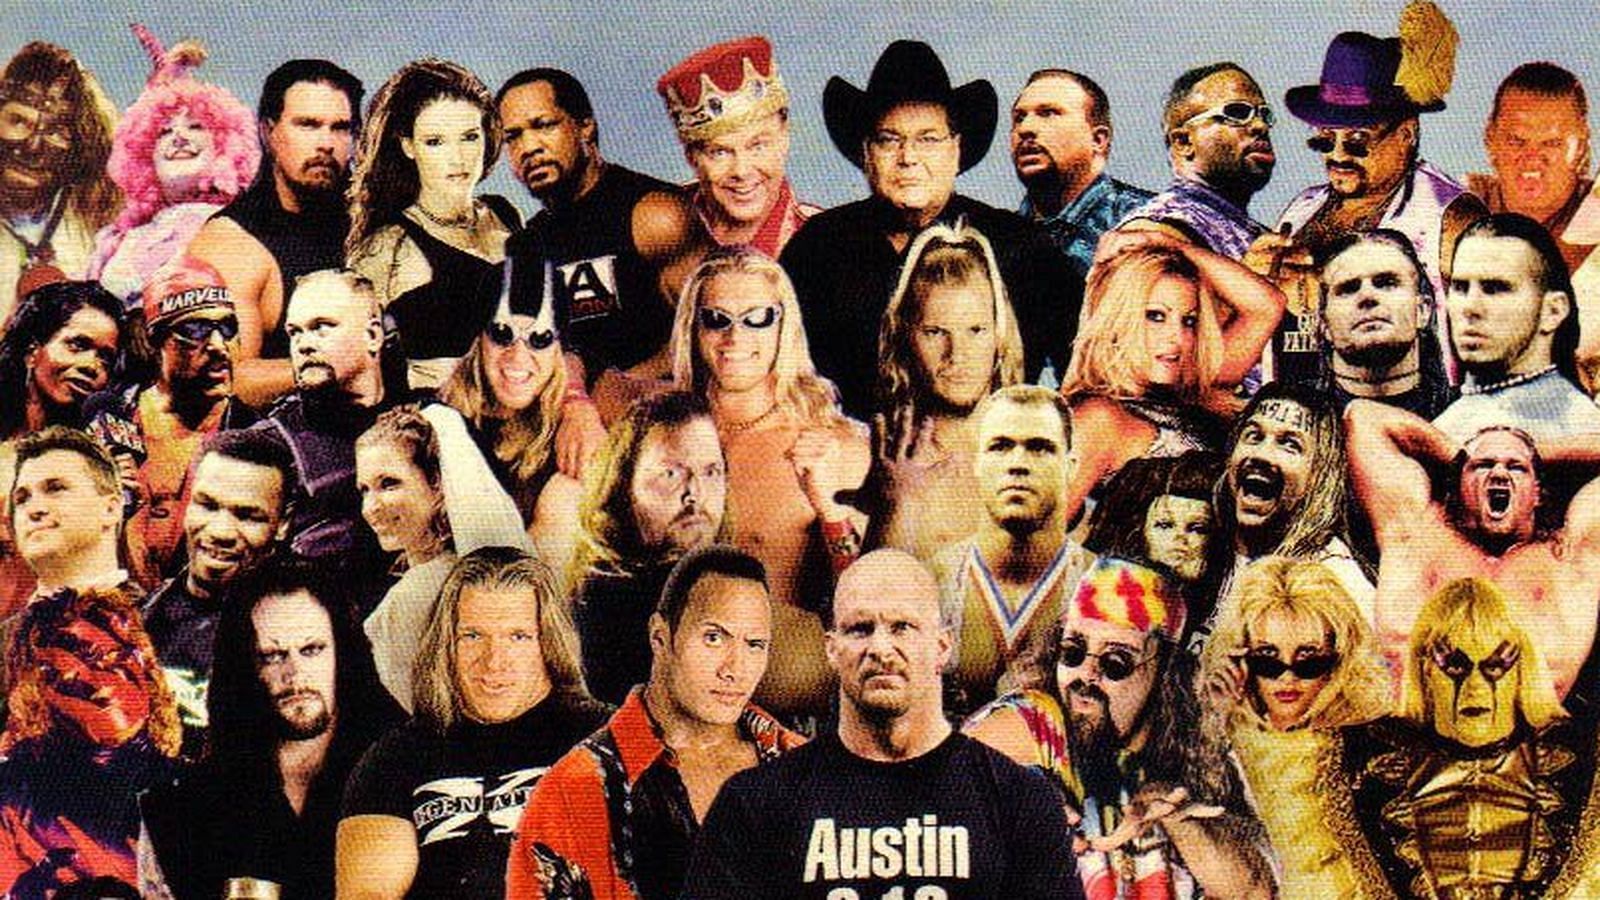 The immortal Attitude Era roster